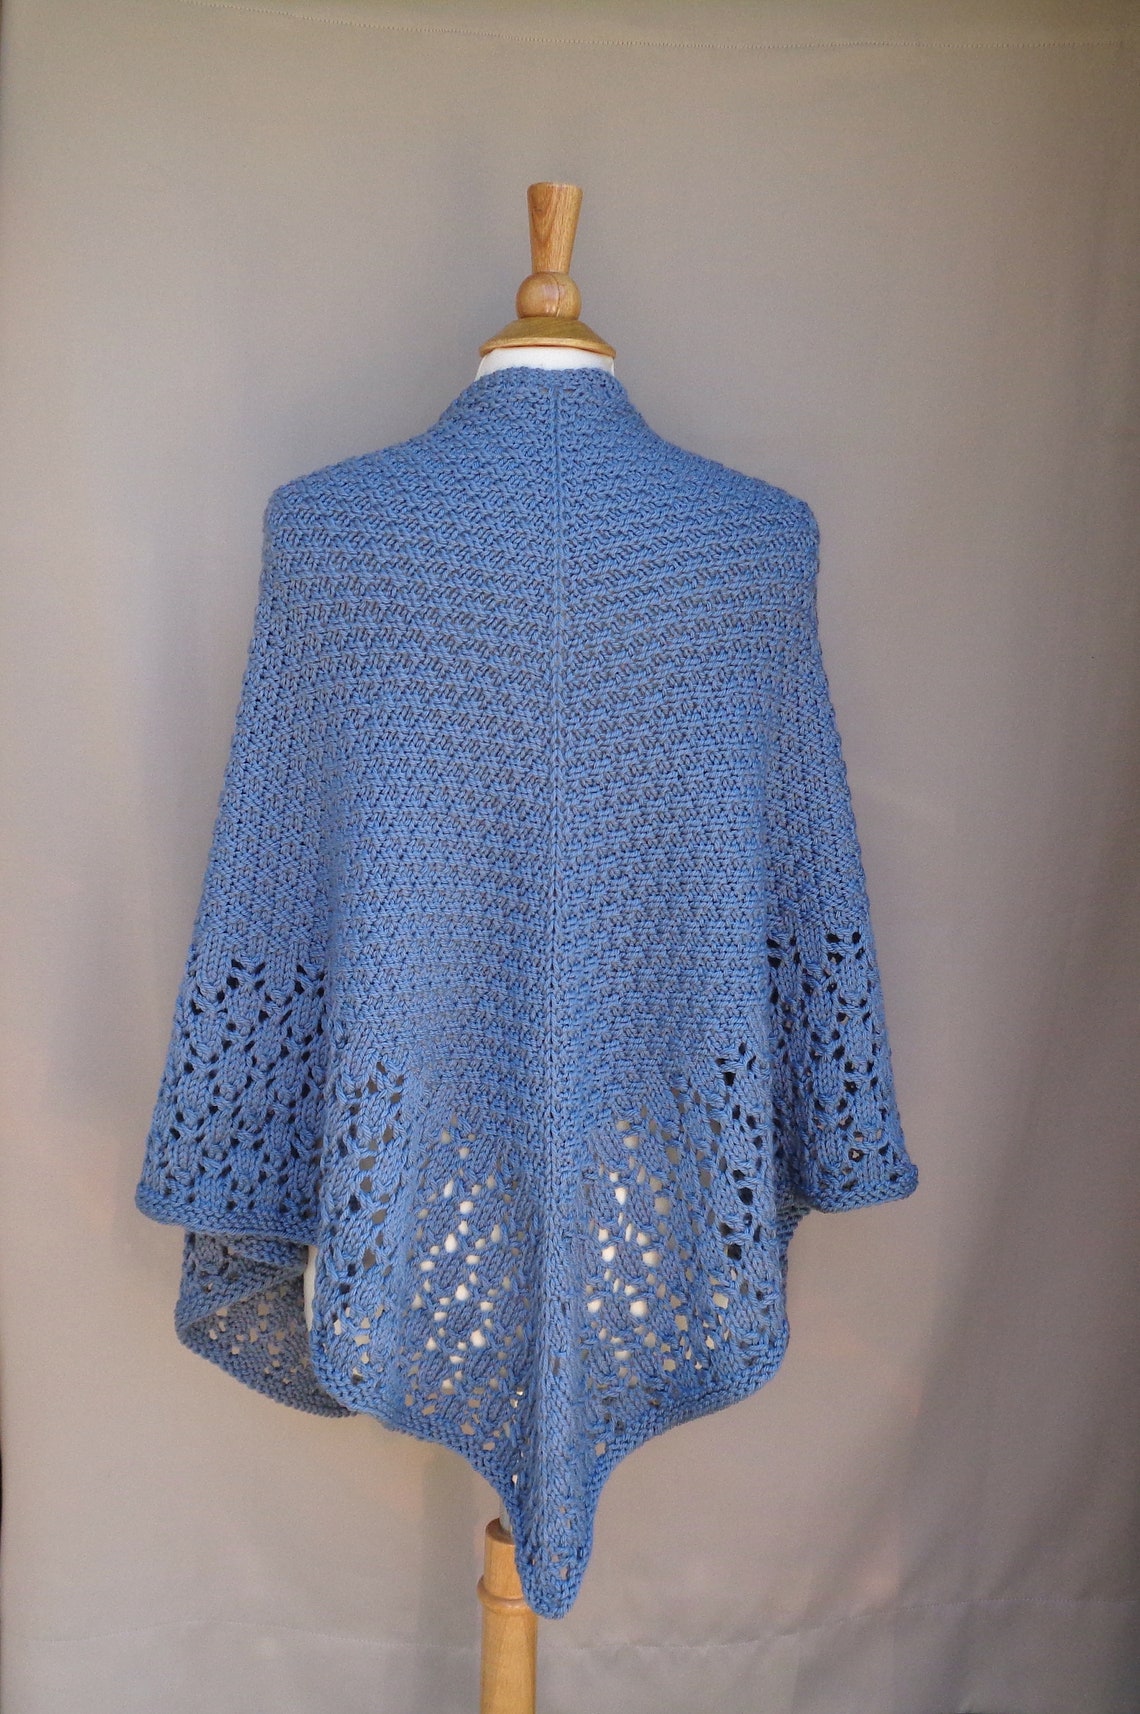 Box Stitch Shawl With Lace Border Knitting Pattern Aran | Etsy